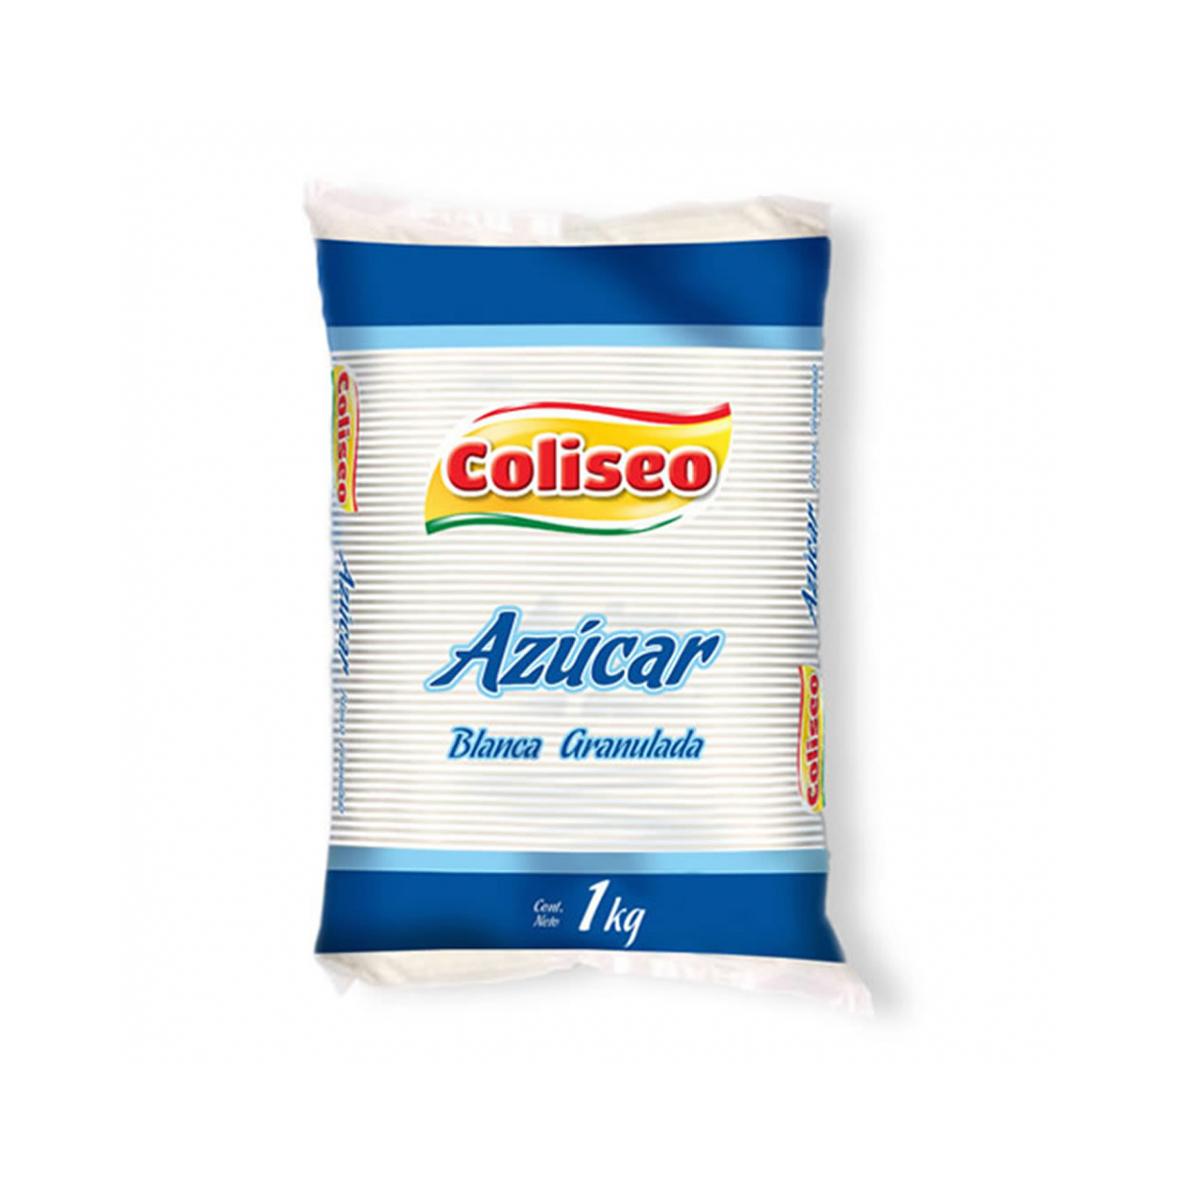 Azúcar blanca granulada Coliseo (1 kg / 2.2 lb)